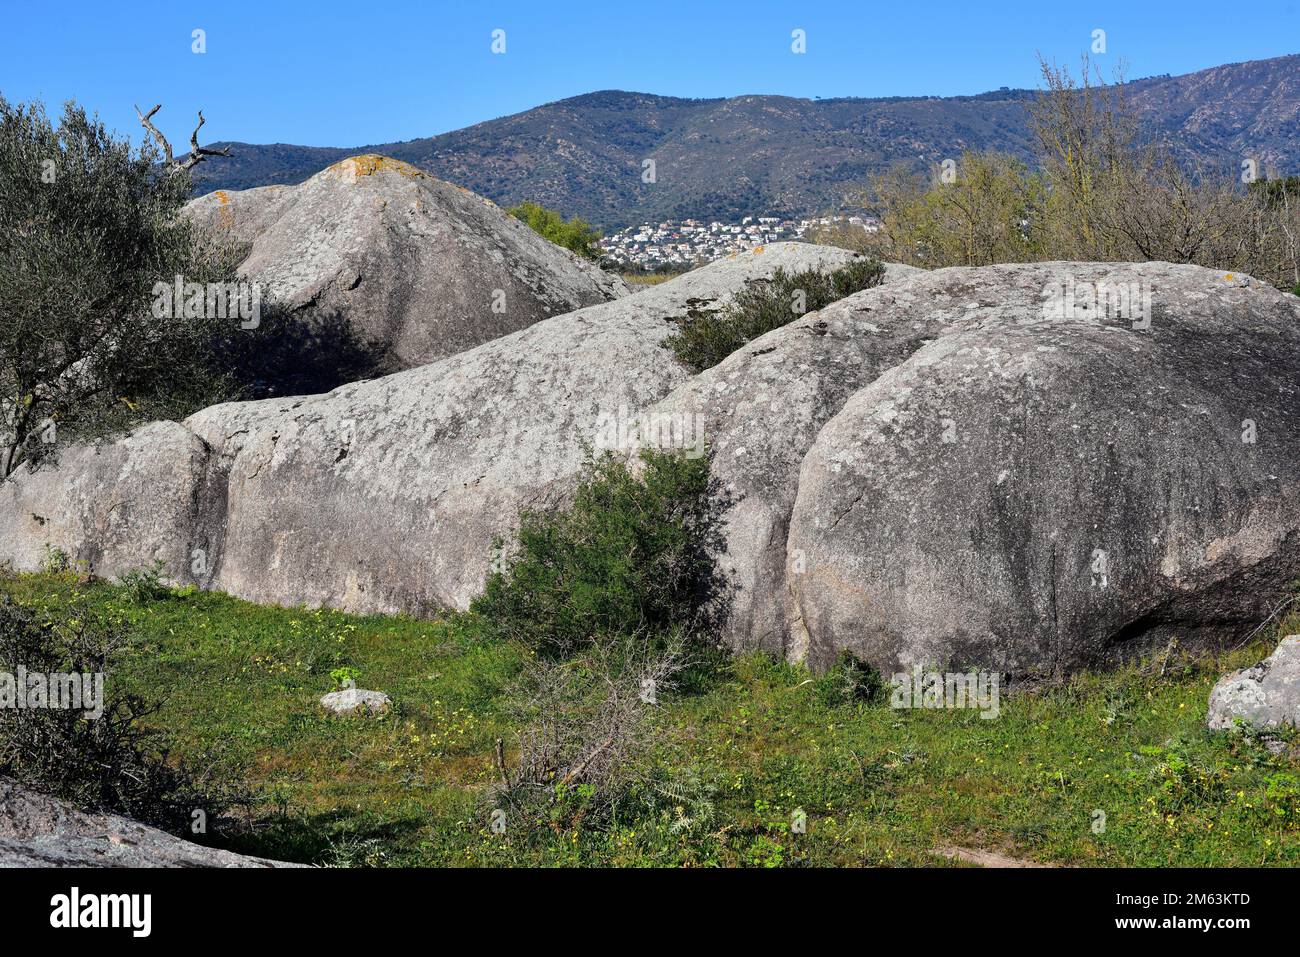 Granodiorit ist ein magmatischer, aufdringlicher Stein, der Granit ähnlich ist, aber mehr Plagioclase enthält. Dieses Foto wurde in Vilaut, Girona, Katalonien, Spanien, aufgenommen. Stockfoto